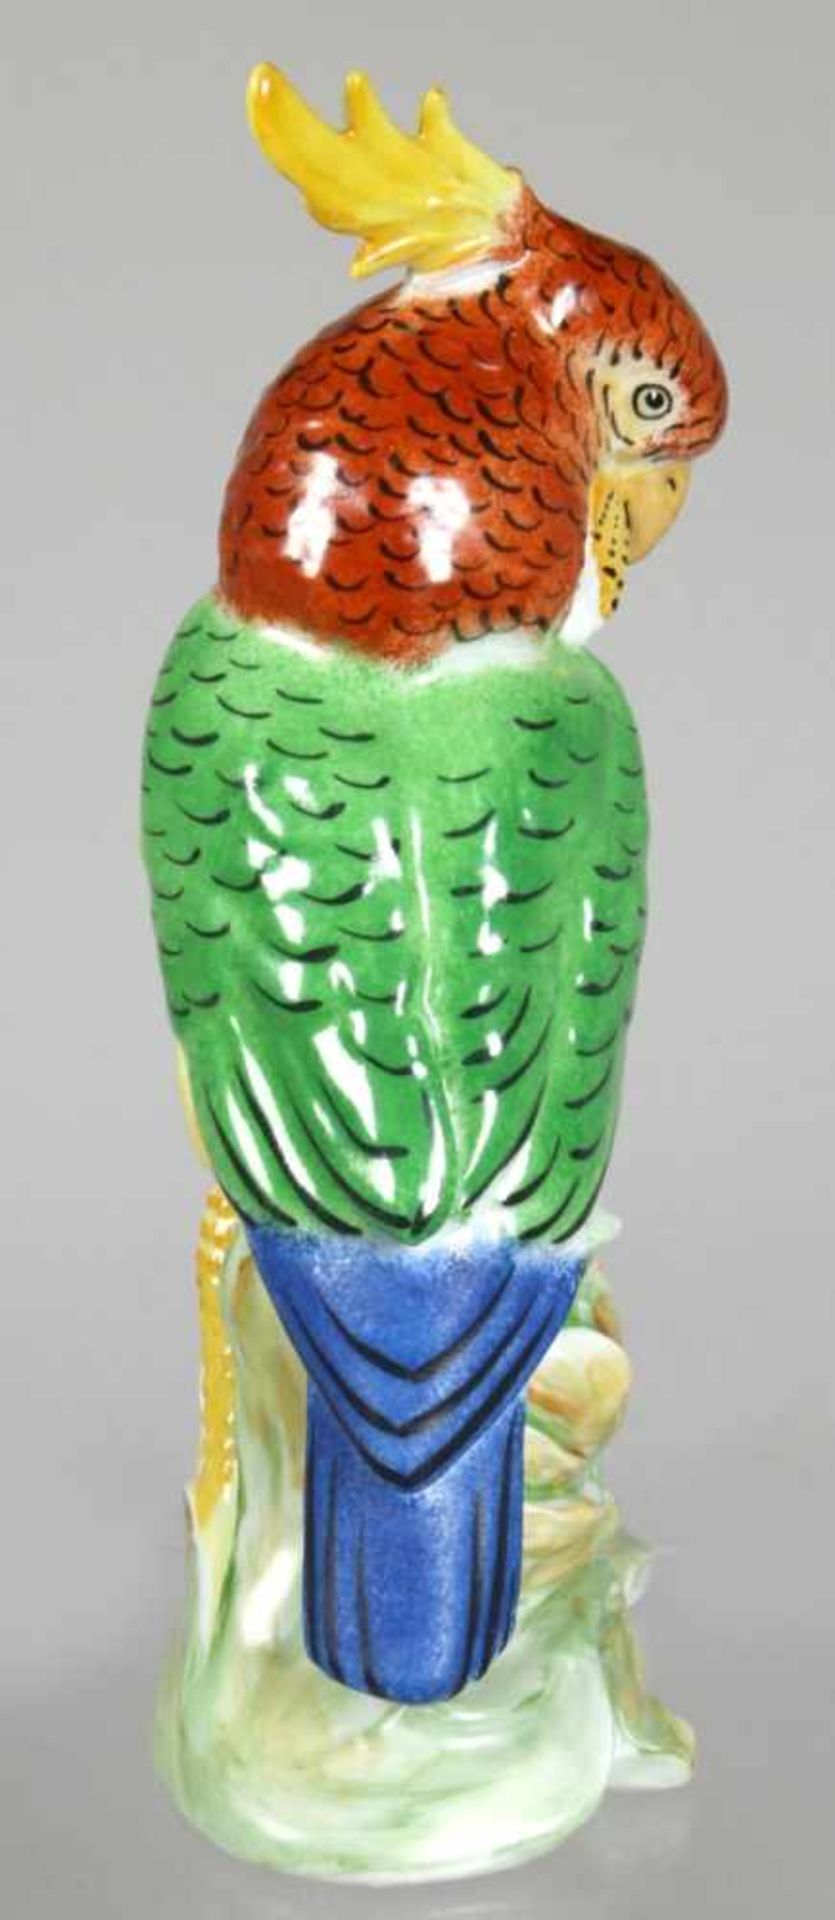 Porzellan-Tierplastik, "Kakadu", Vereinigte Zierporzellanwerke Lichte, um 1986-90, - Bild 2 aus 3